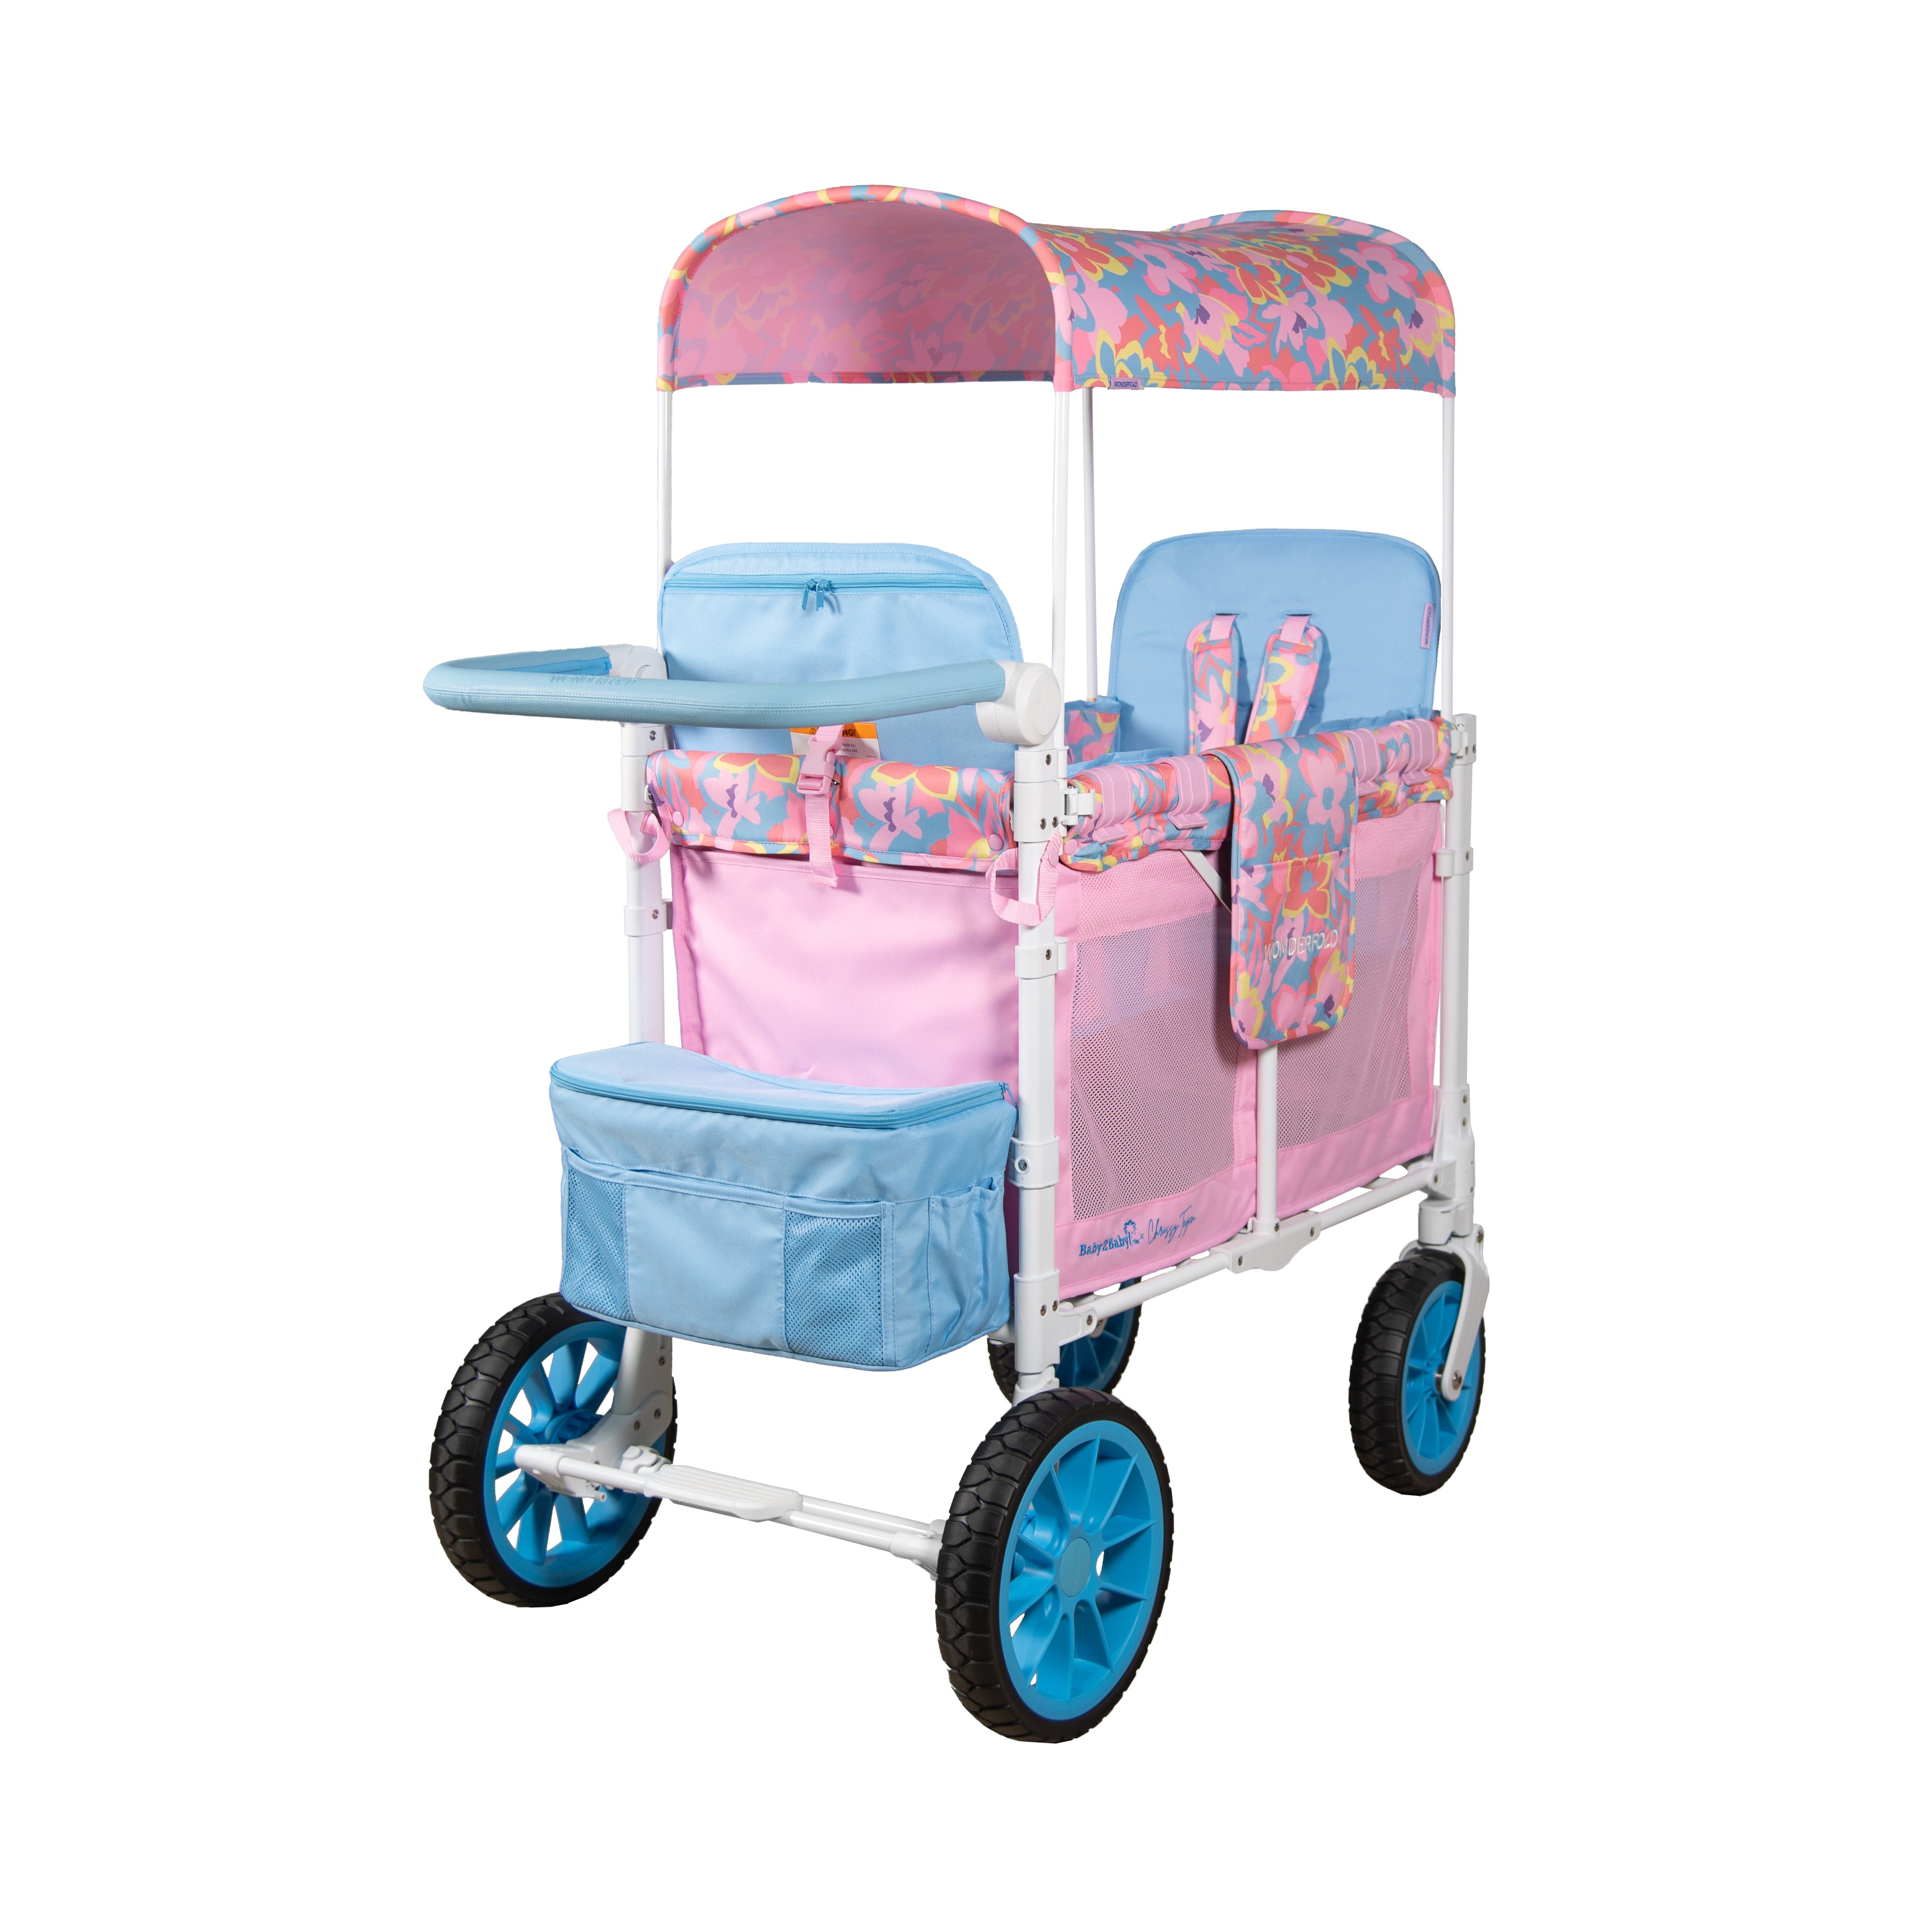 W2 Petal Pop Stroller Wagon (Limited Edition)